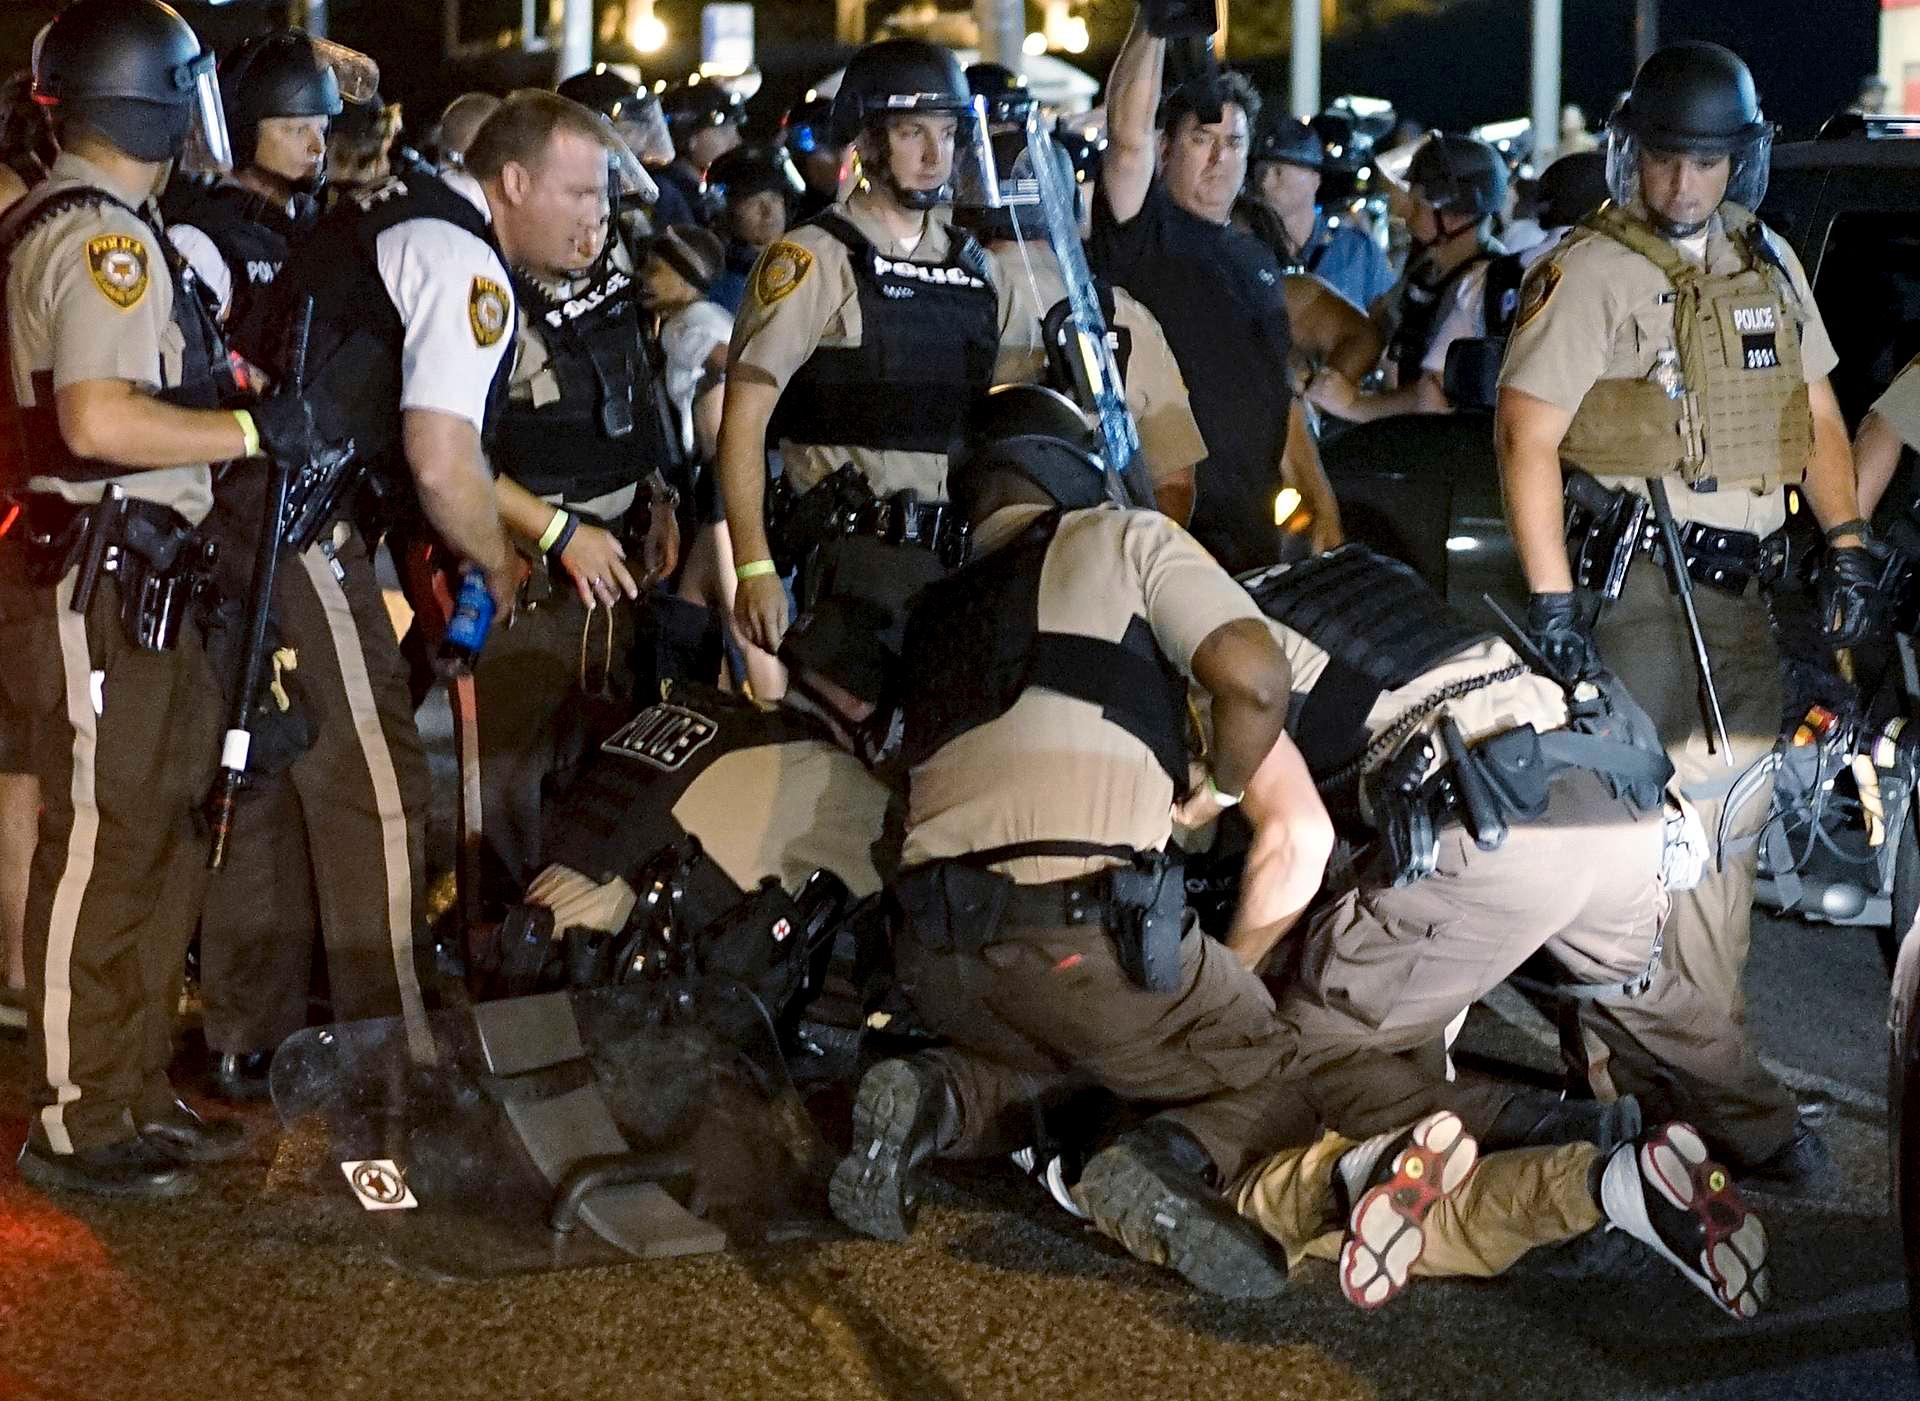 Politiet slo knallhardt ned på demonstrantene i Ferguson. Det førte til en debatt om militarisering av politiet i USA, og hvordan de møter sivilbefolkningen.